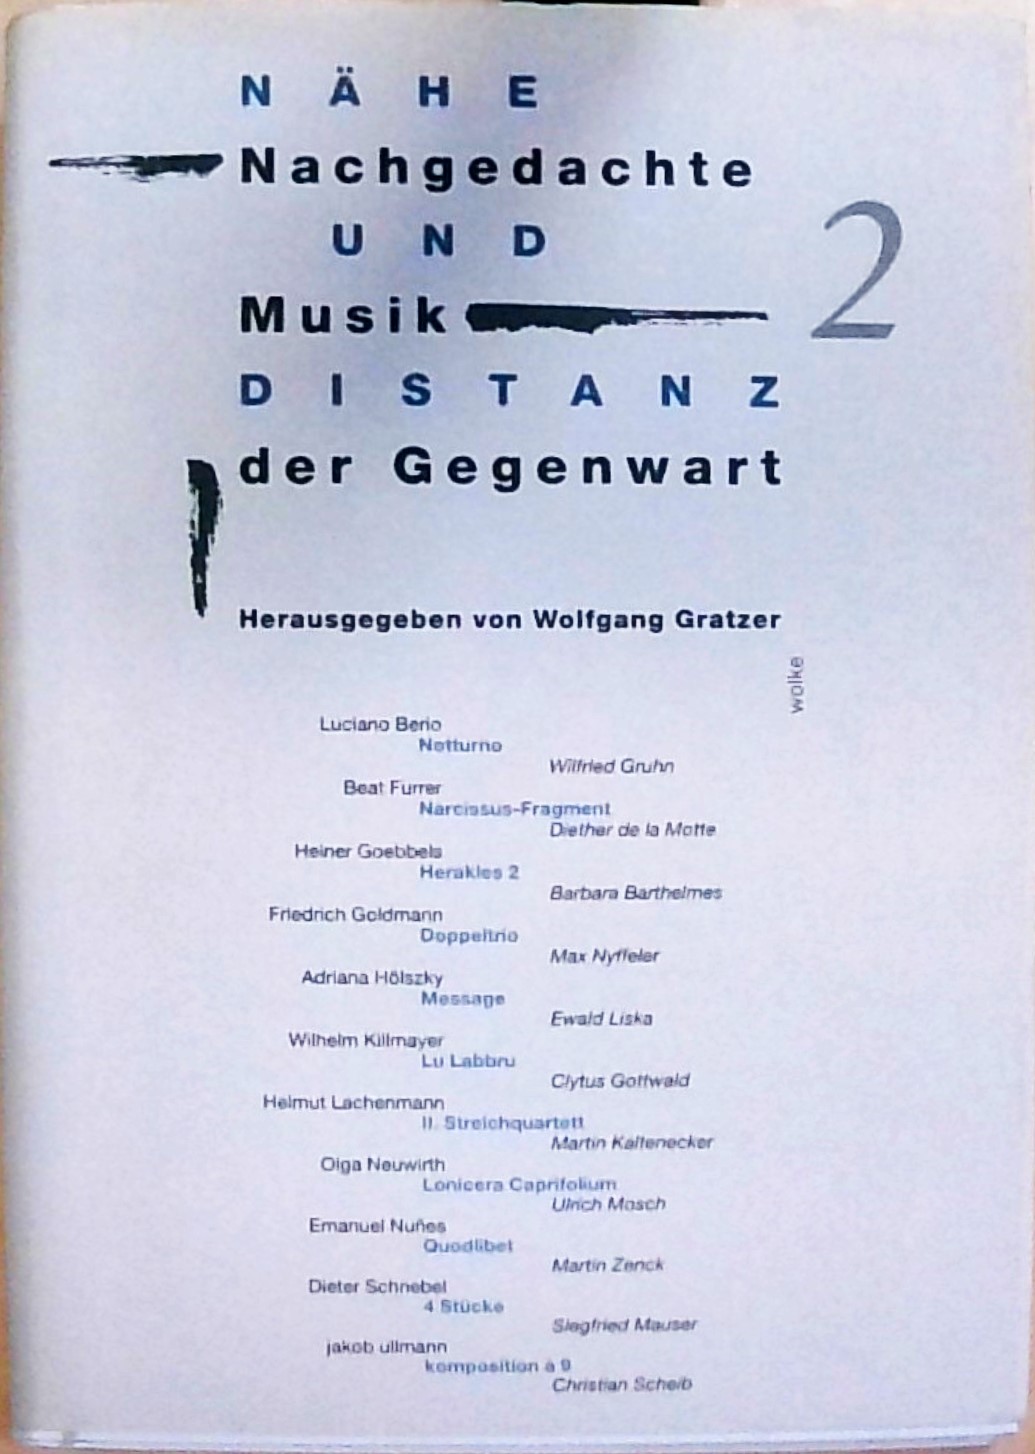 Die Musik von Edgard Varèse: Studien zu seinen nach 1918 entstandenen Werken - LaMotte, Helga de